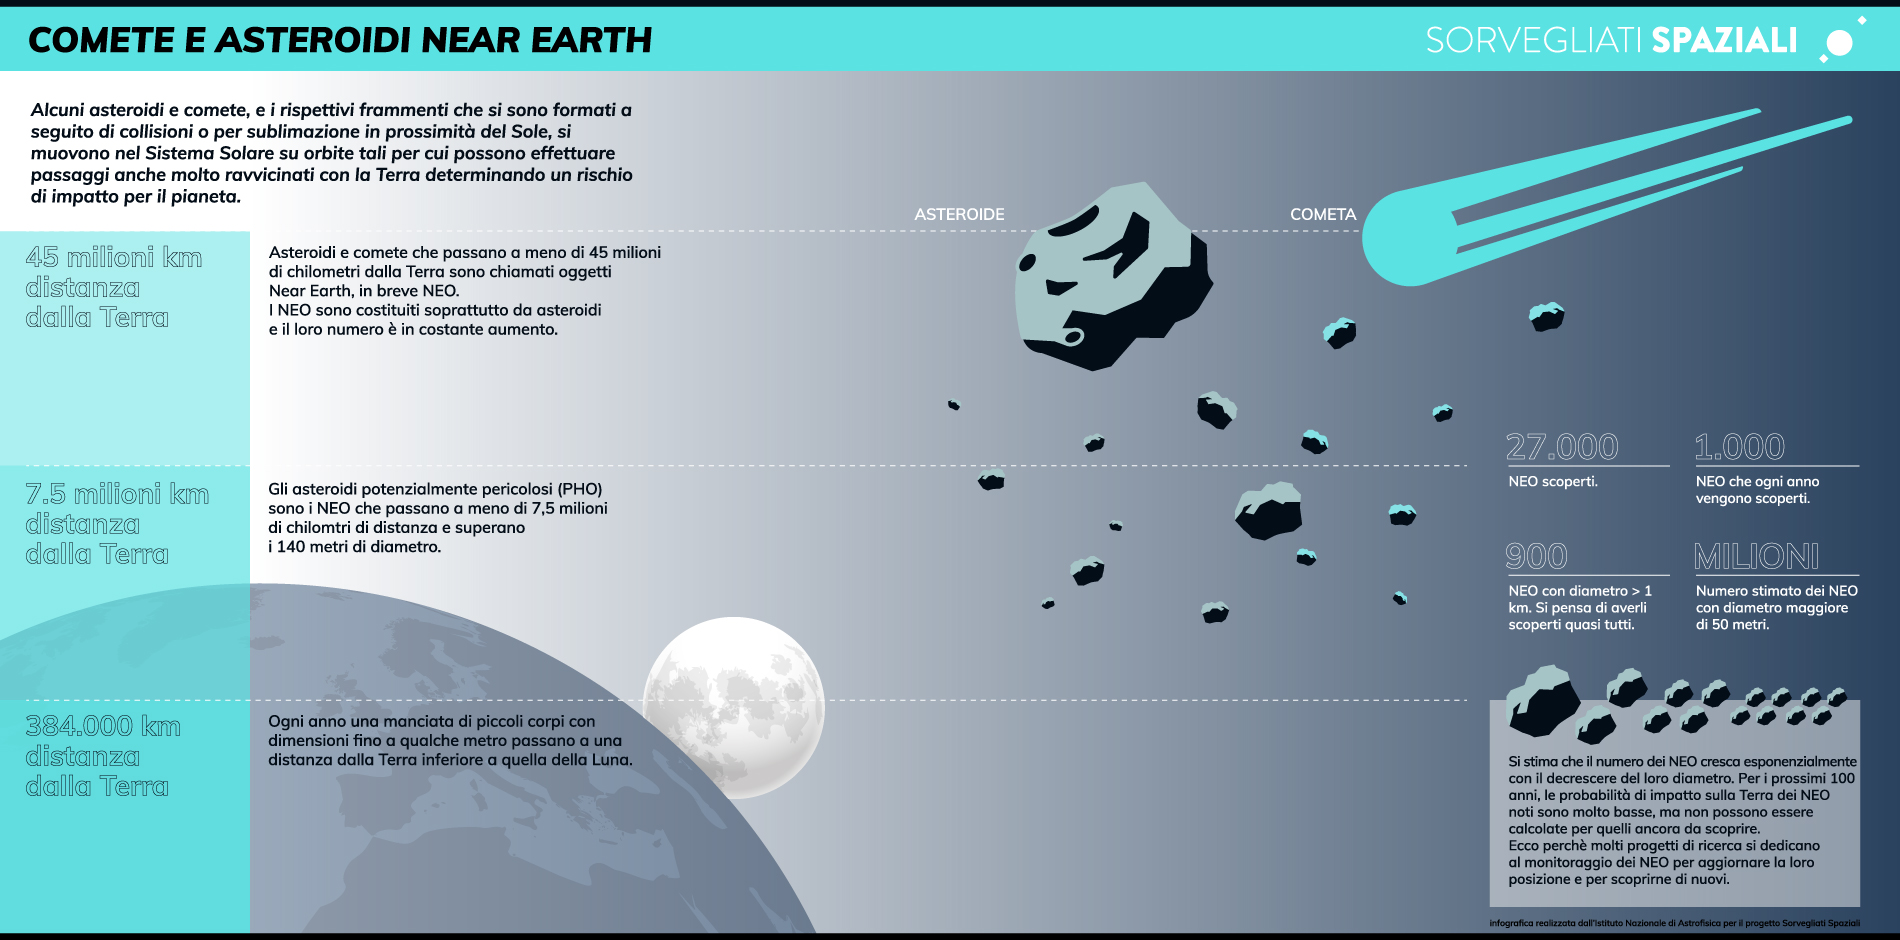 Infografica comete e asteroidi near earth